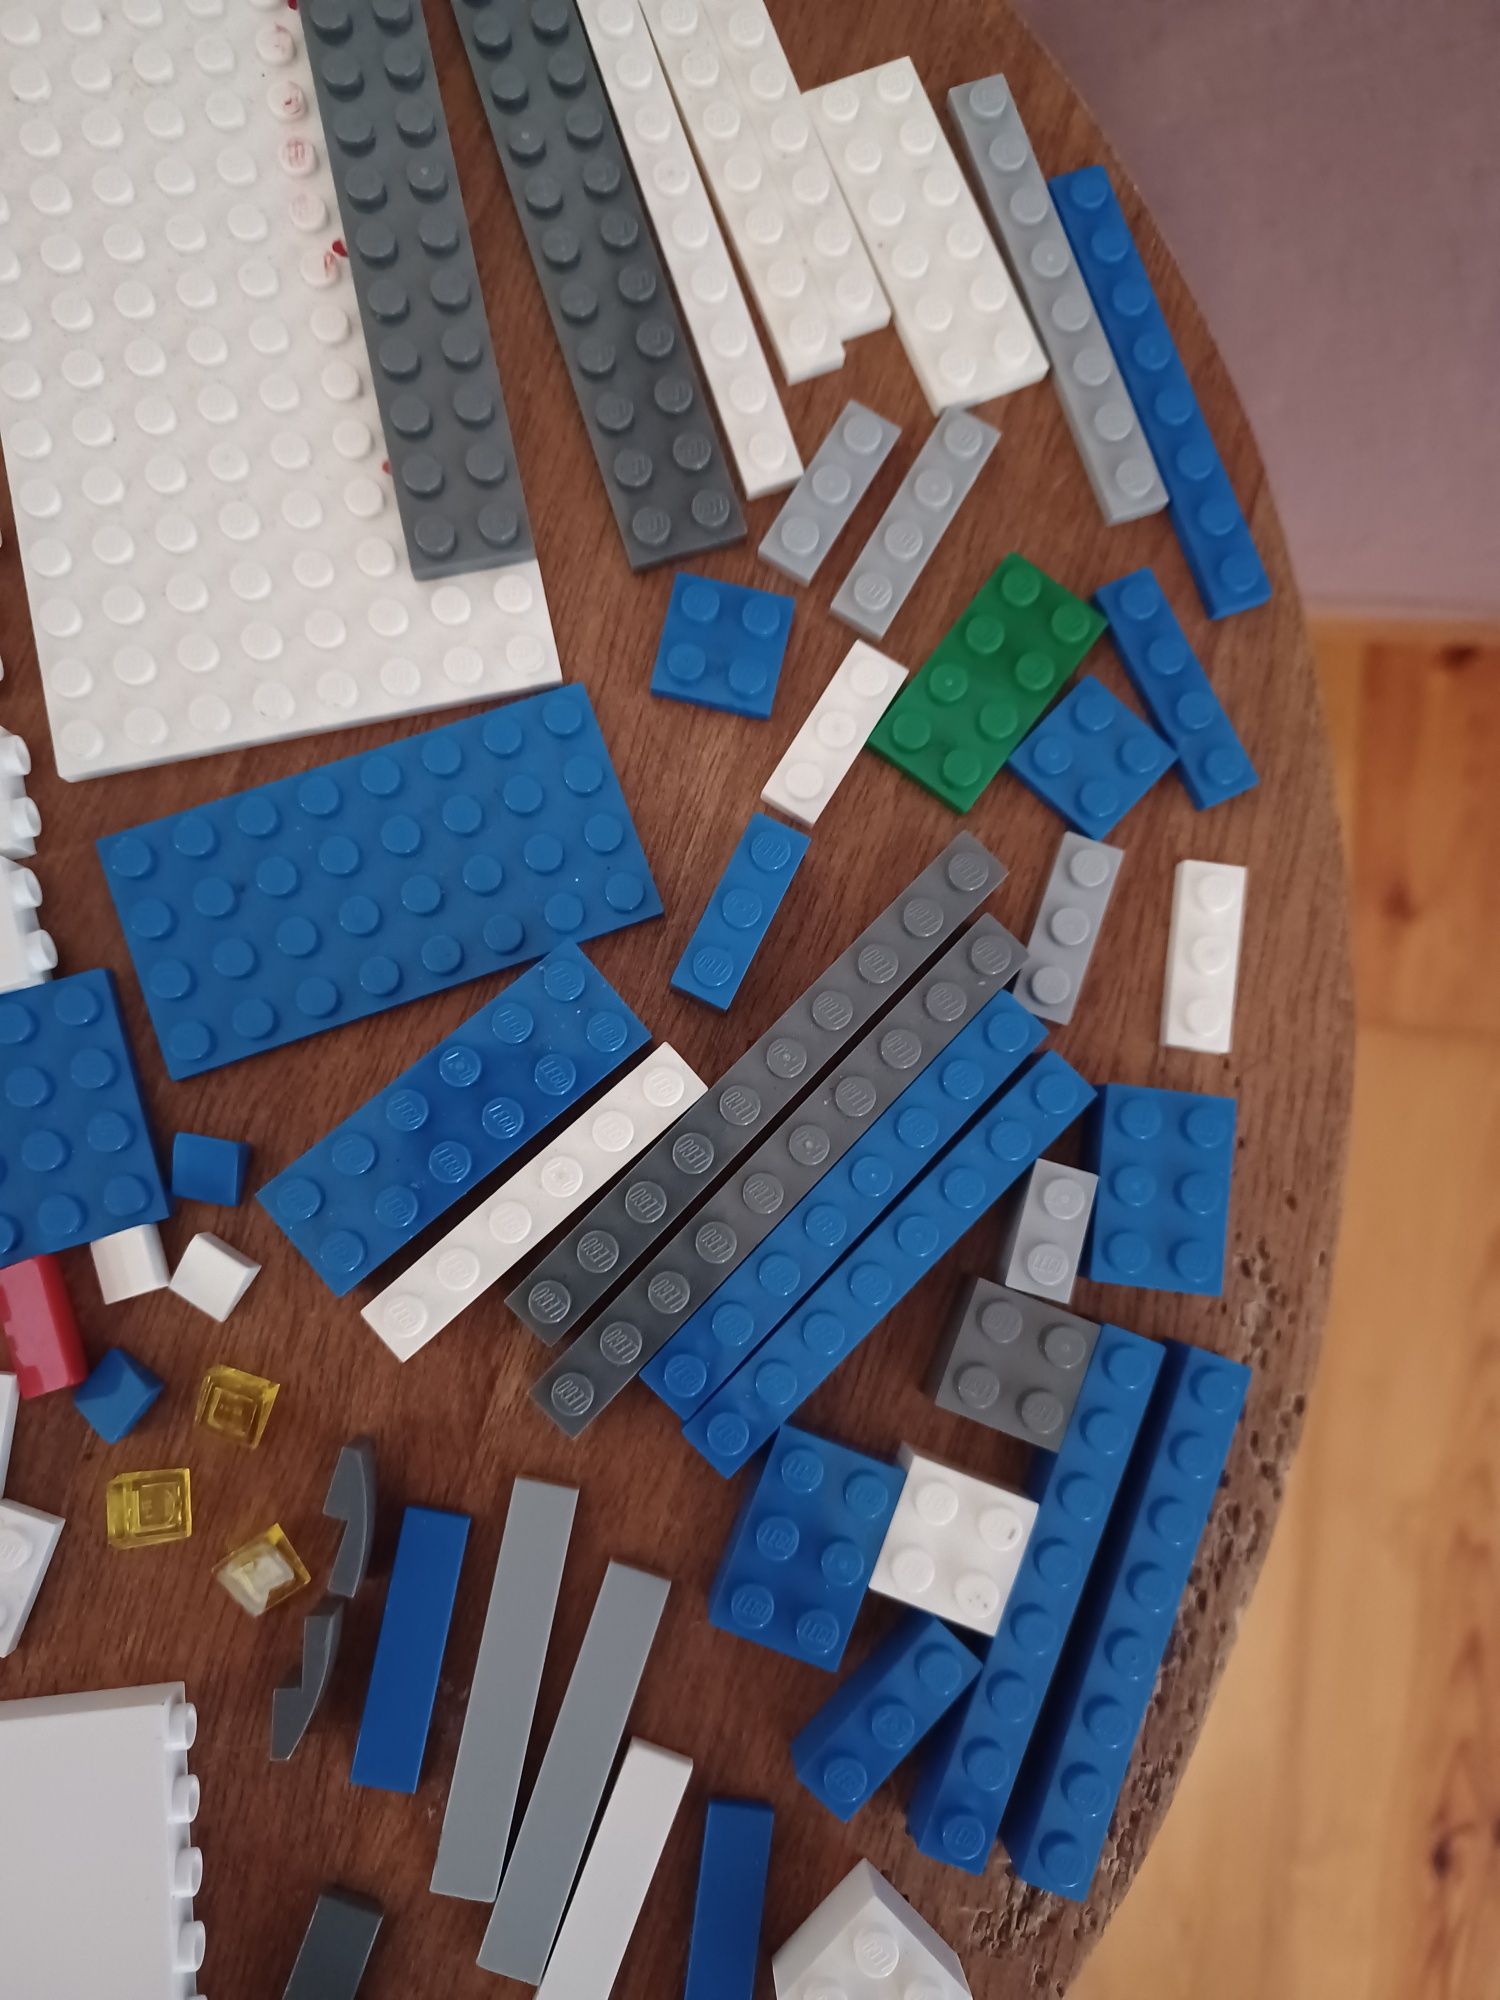 Aproximadamente 180 peças LEGO